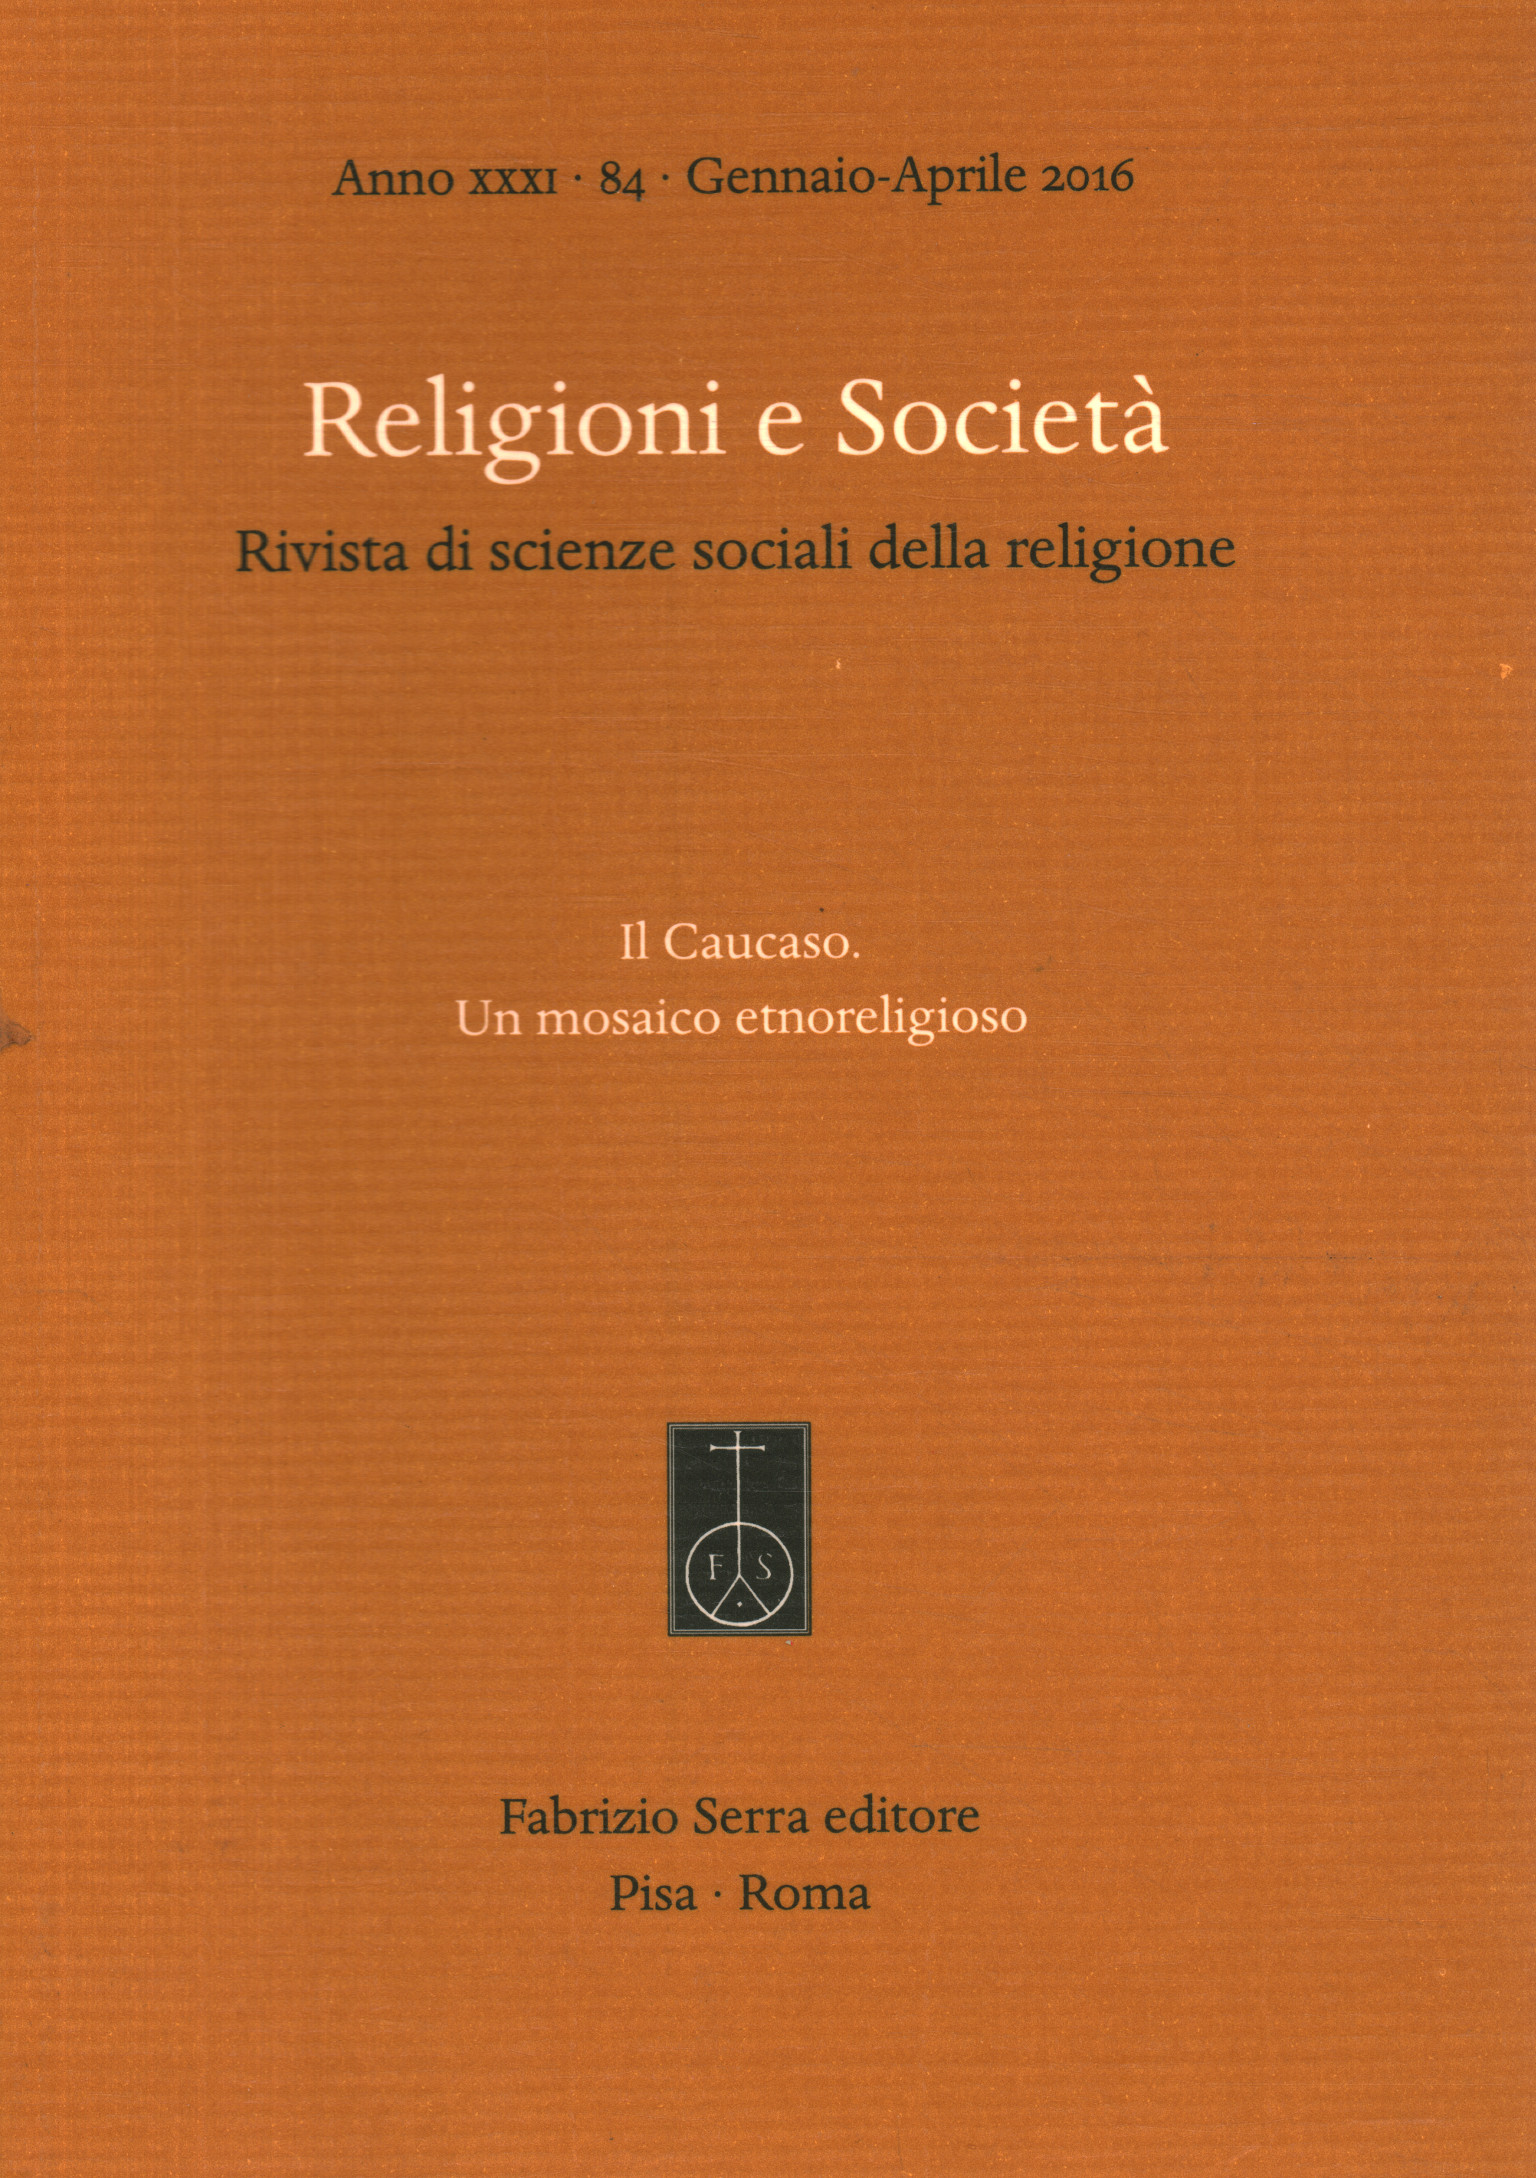 Religiones y sociedad